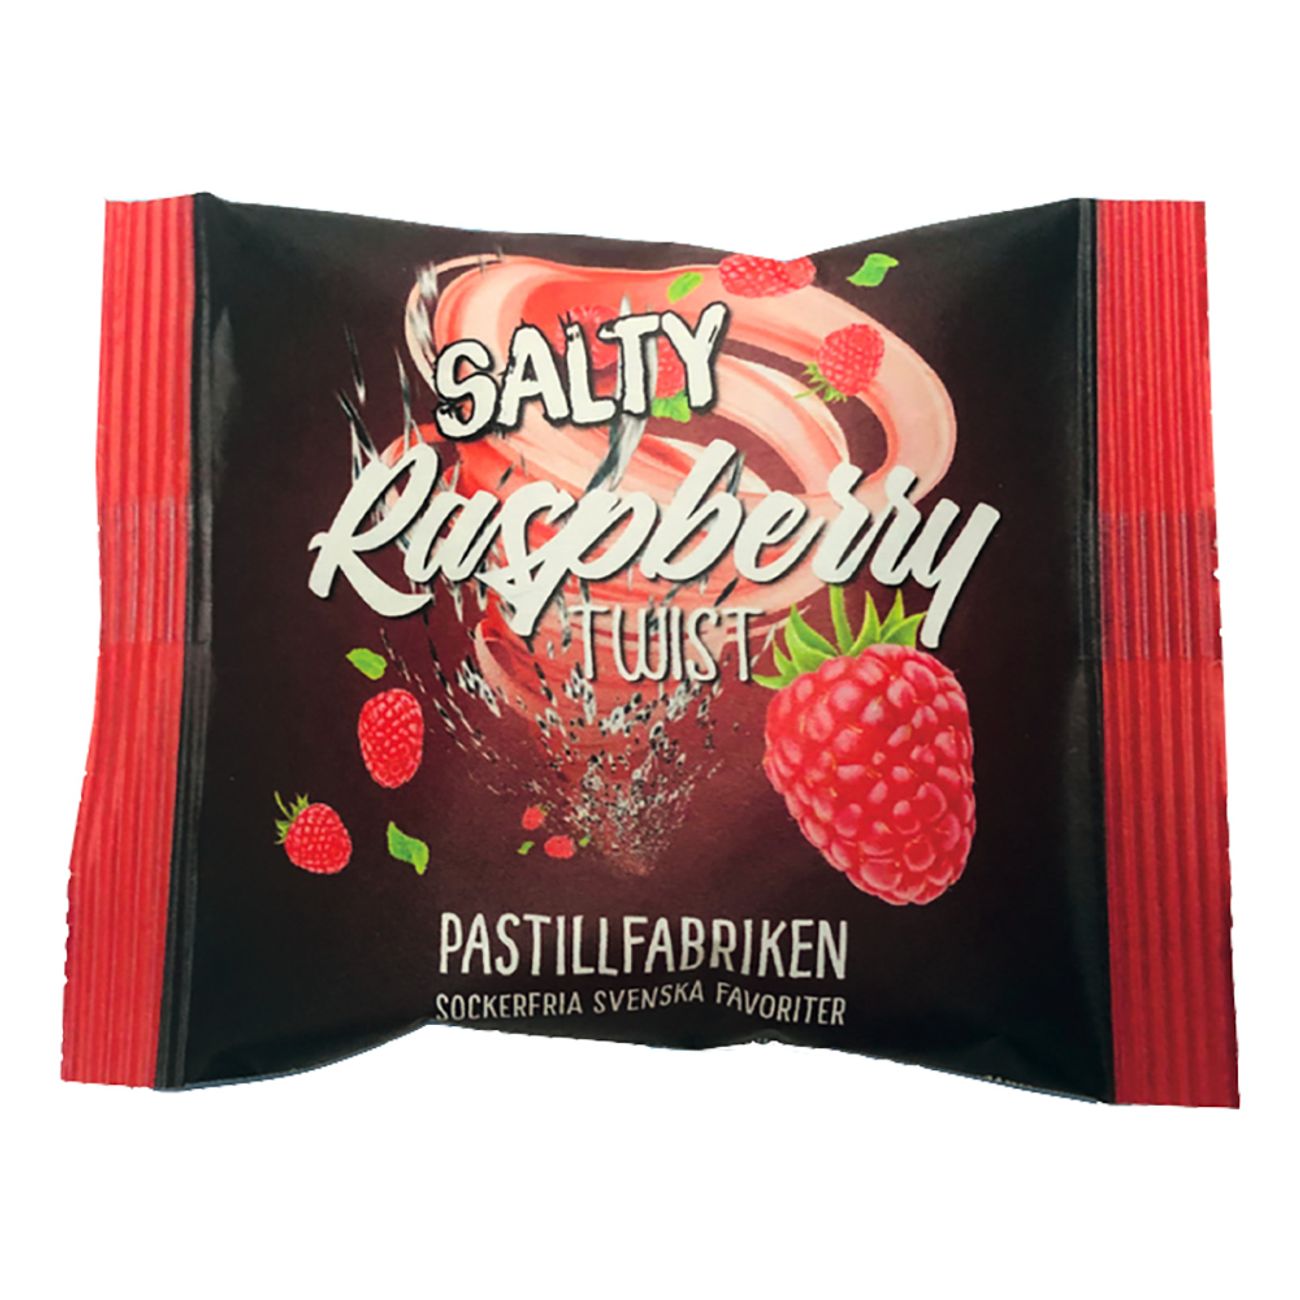 pastillfabriken-salty-raspberry-twist-pase-2